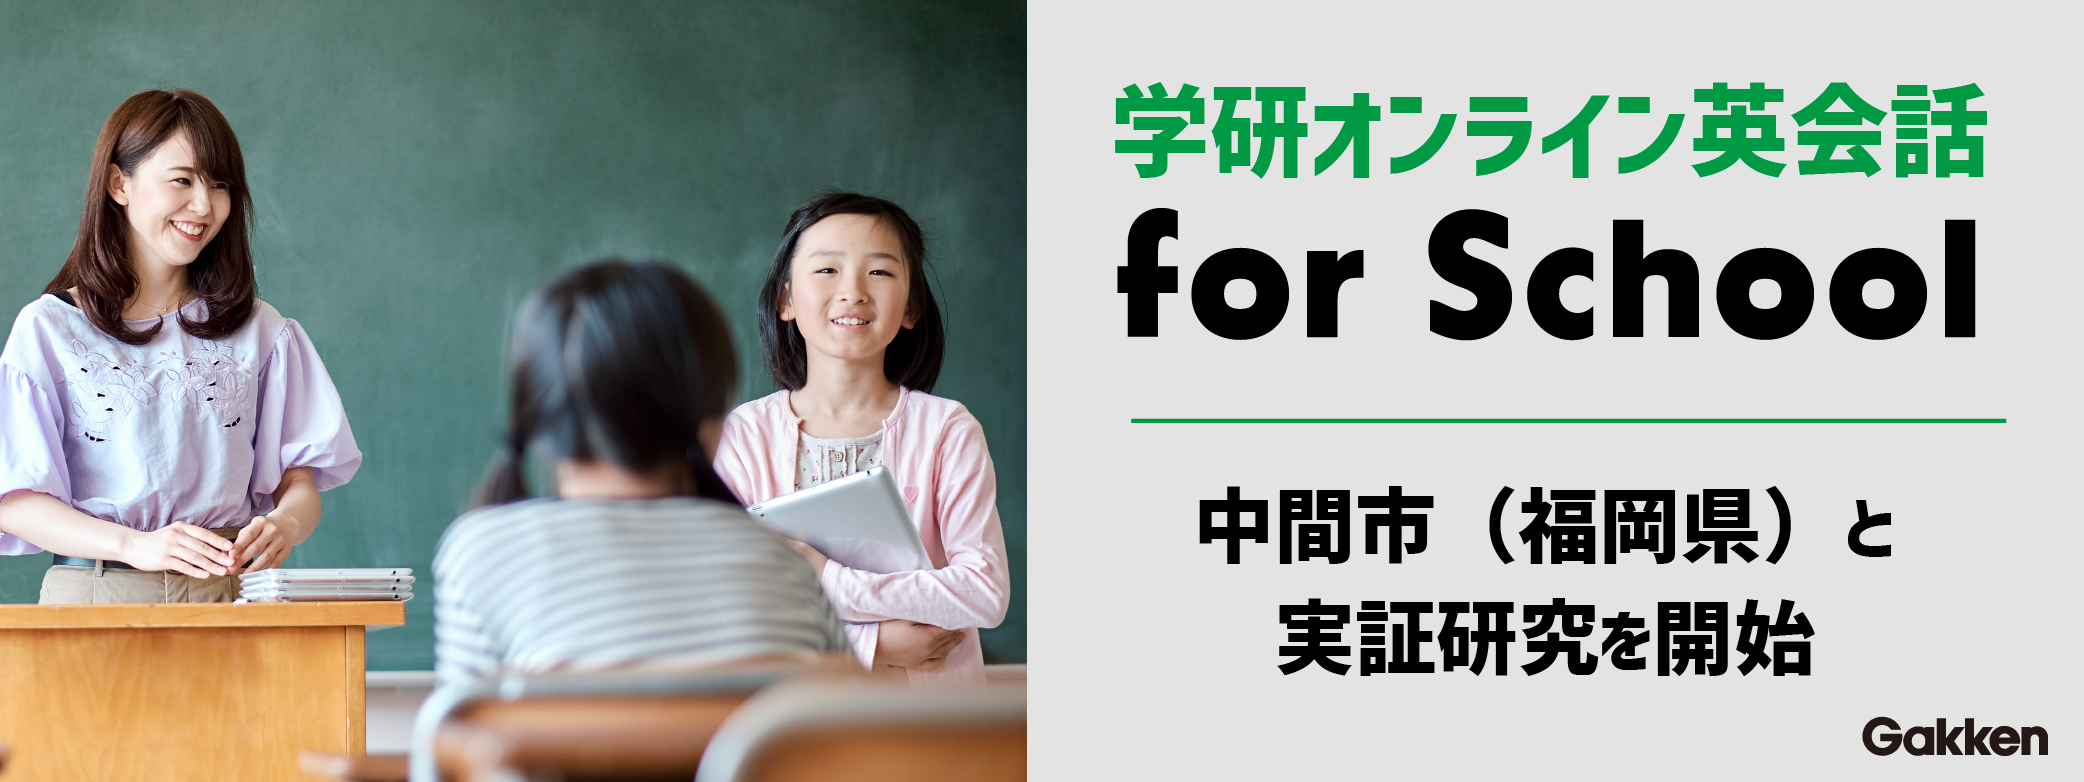 『学研オンライン英会話 for School』福岡県中間市と実証研究を開始　告知画像